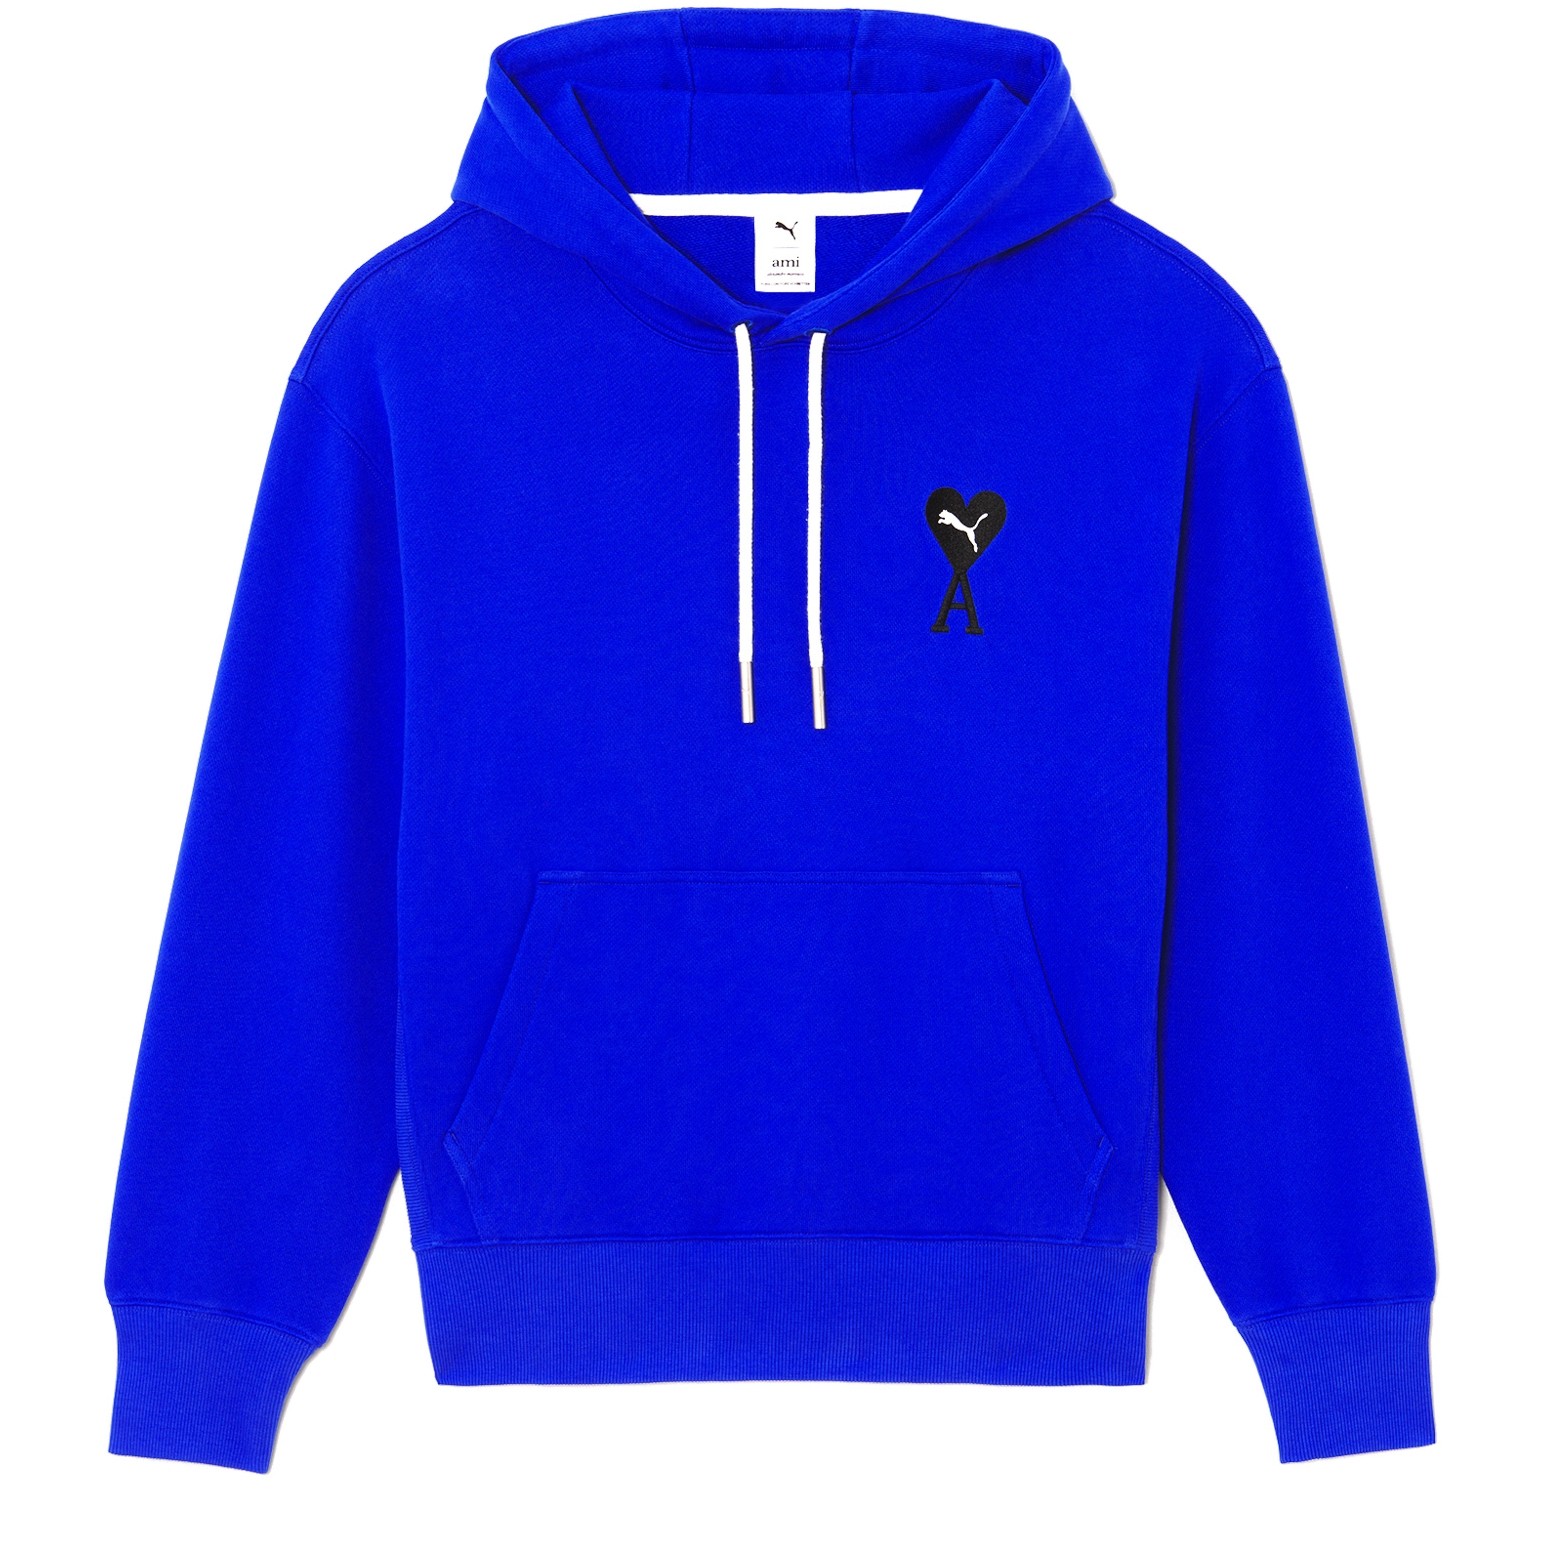 Puma x AMI Pullover Hooded Sweatshirt (Dazzling Blu) - 53406993 ...